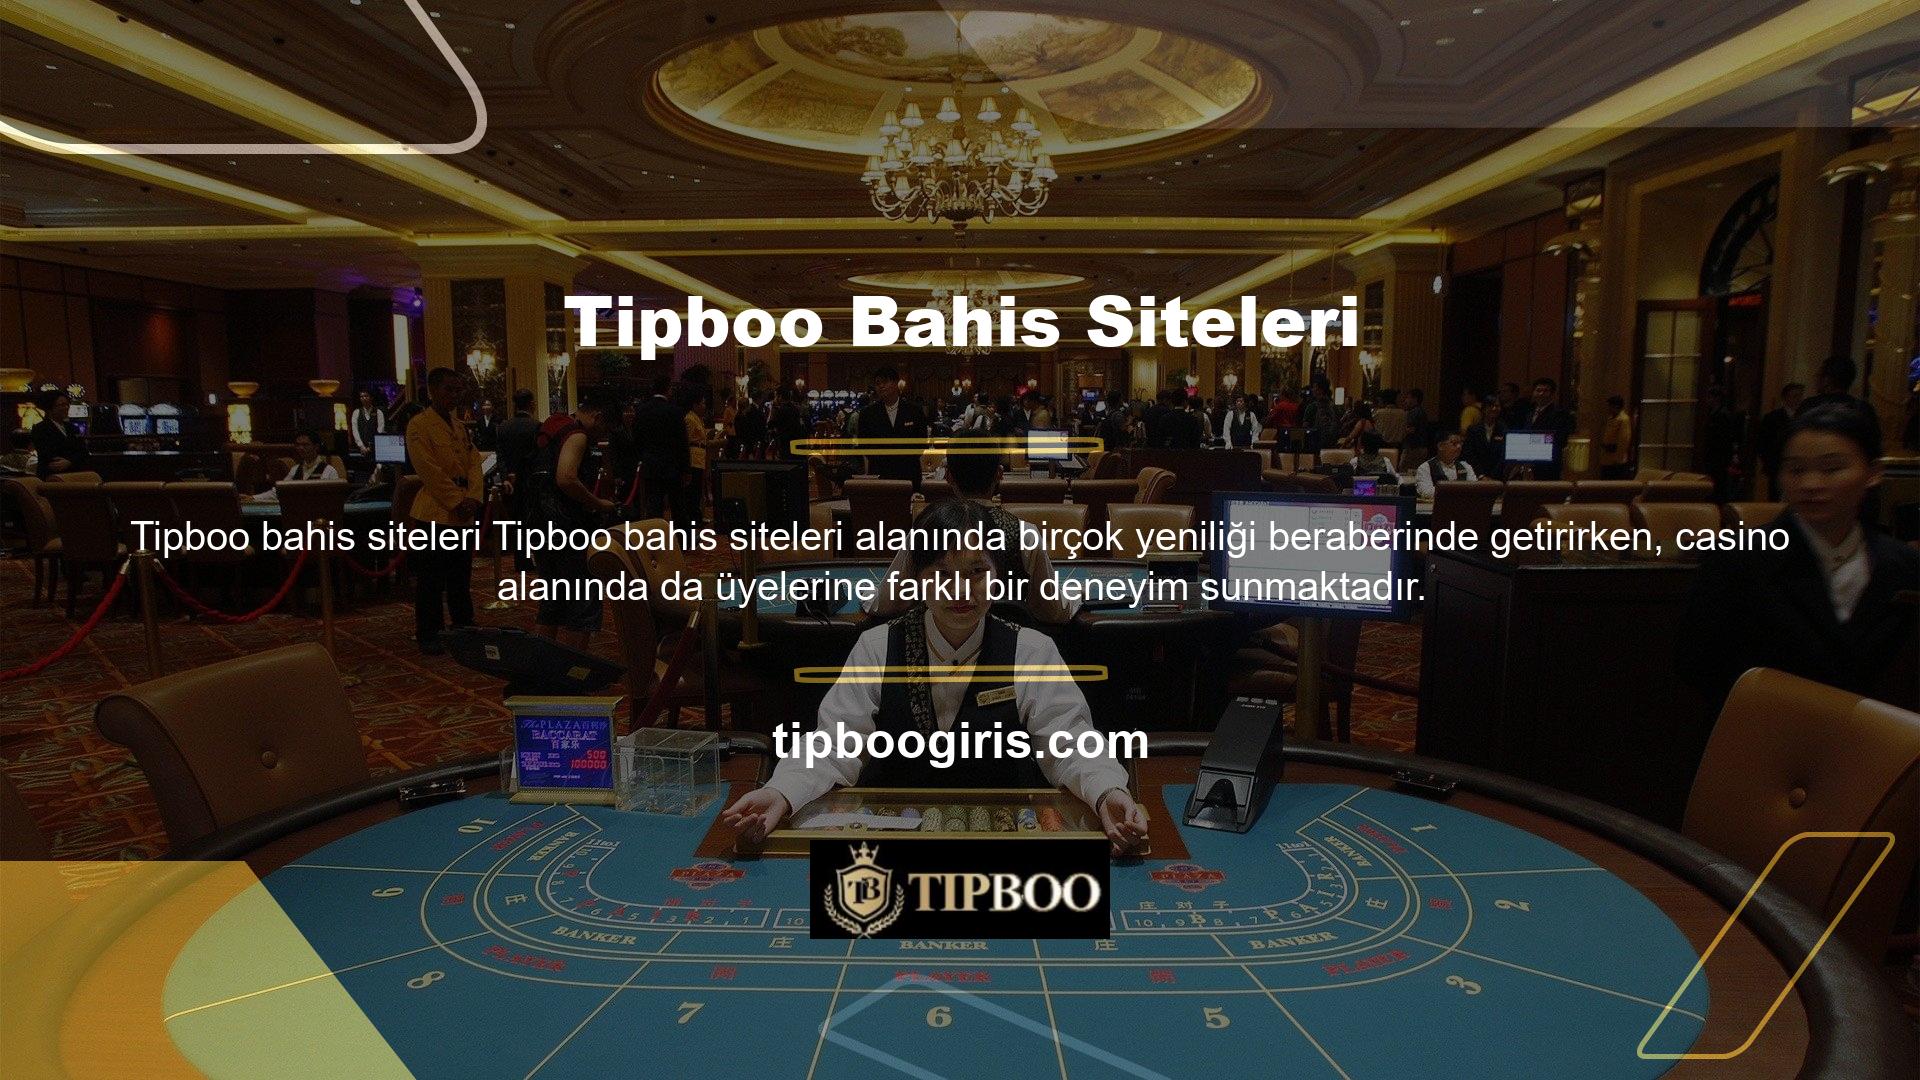 Klasik casino oyunlarının çeşitli versiyonları, üyelerin eğlenmesi ve para kazanması için özenle hazırlanmıştır